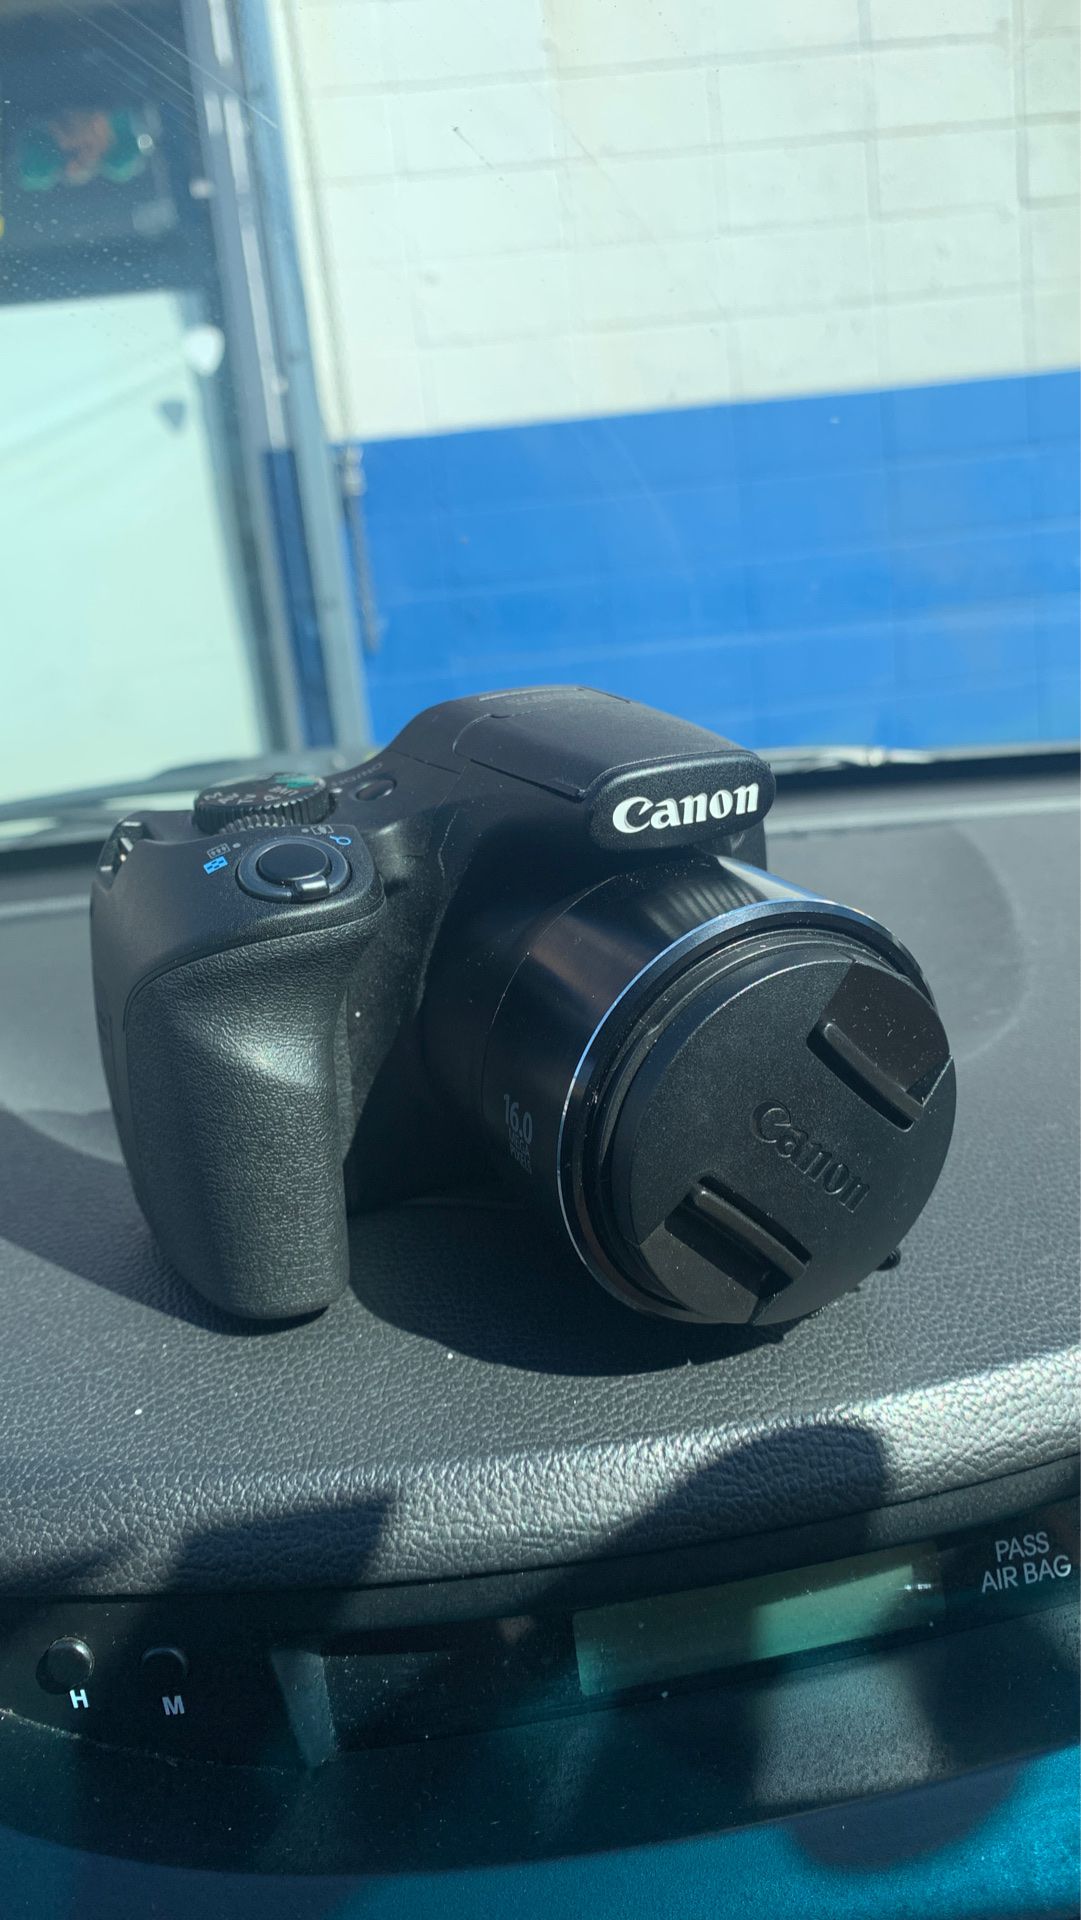 Canon sx530 hs powershot